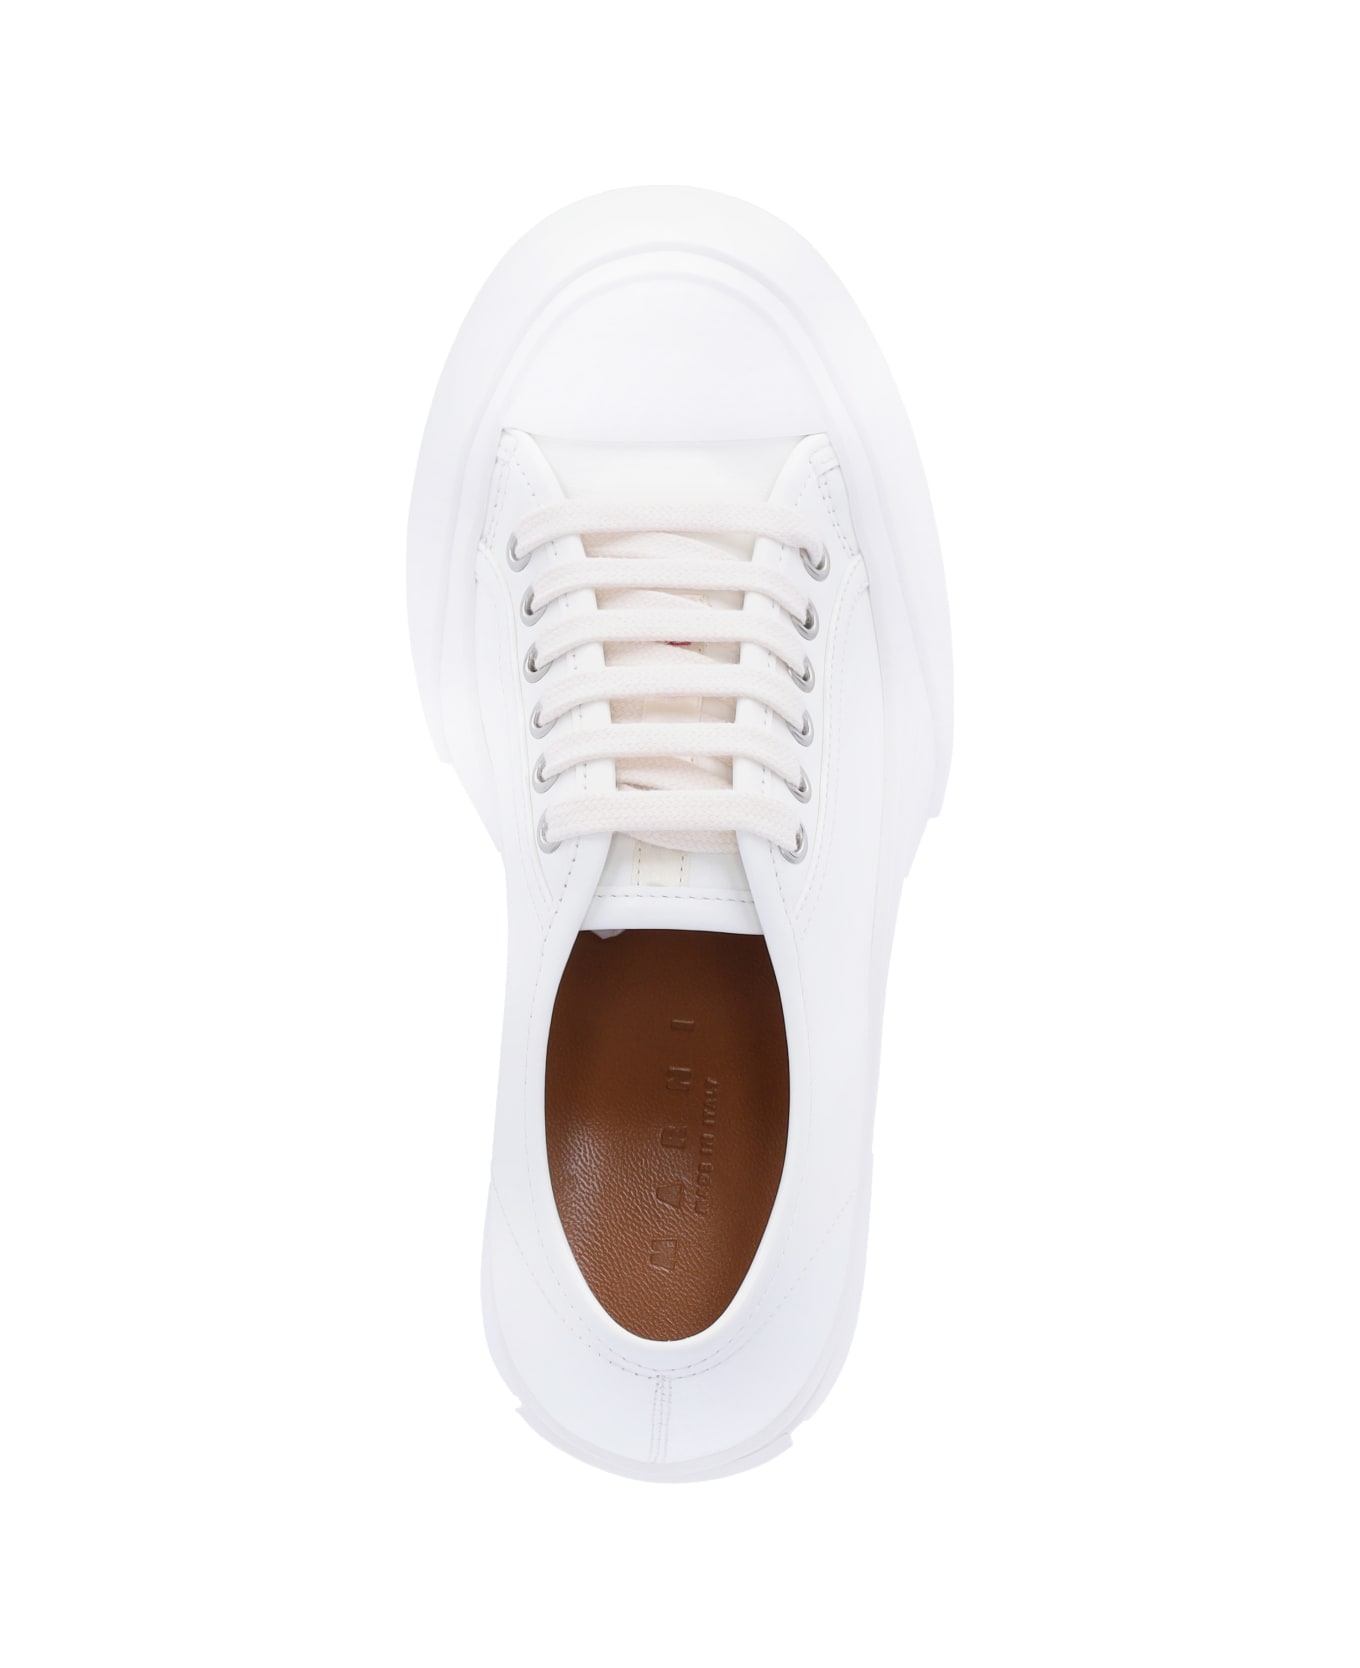 Marni Heel Sneakers - White